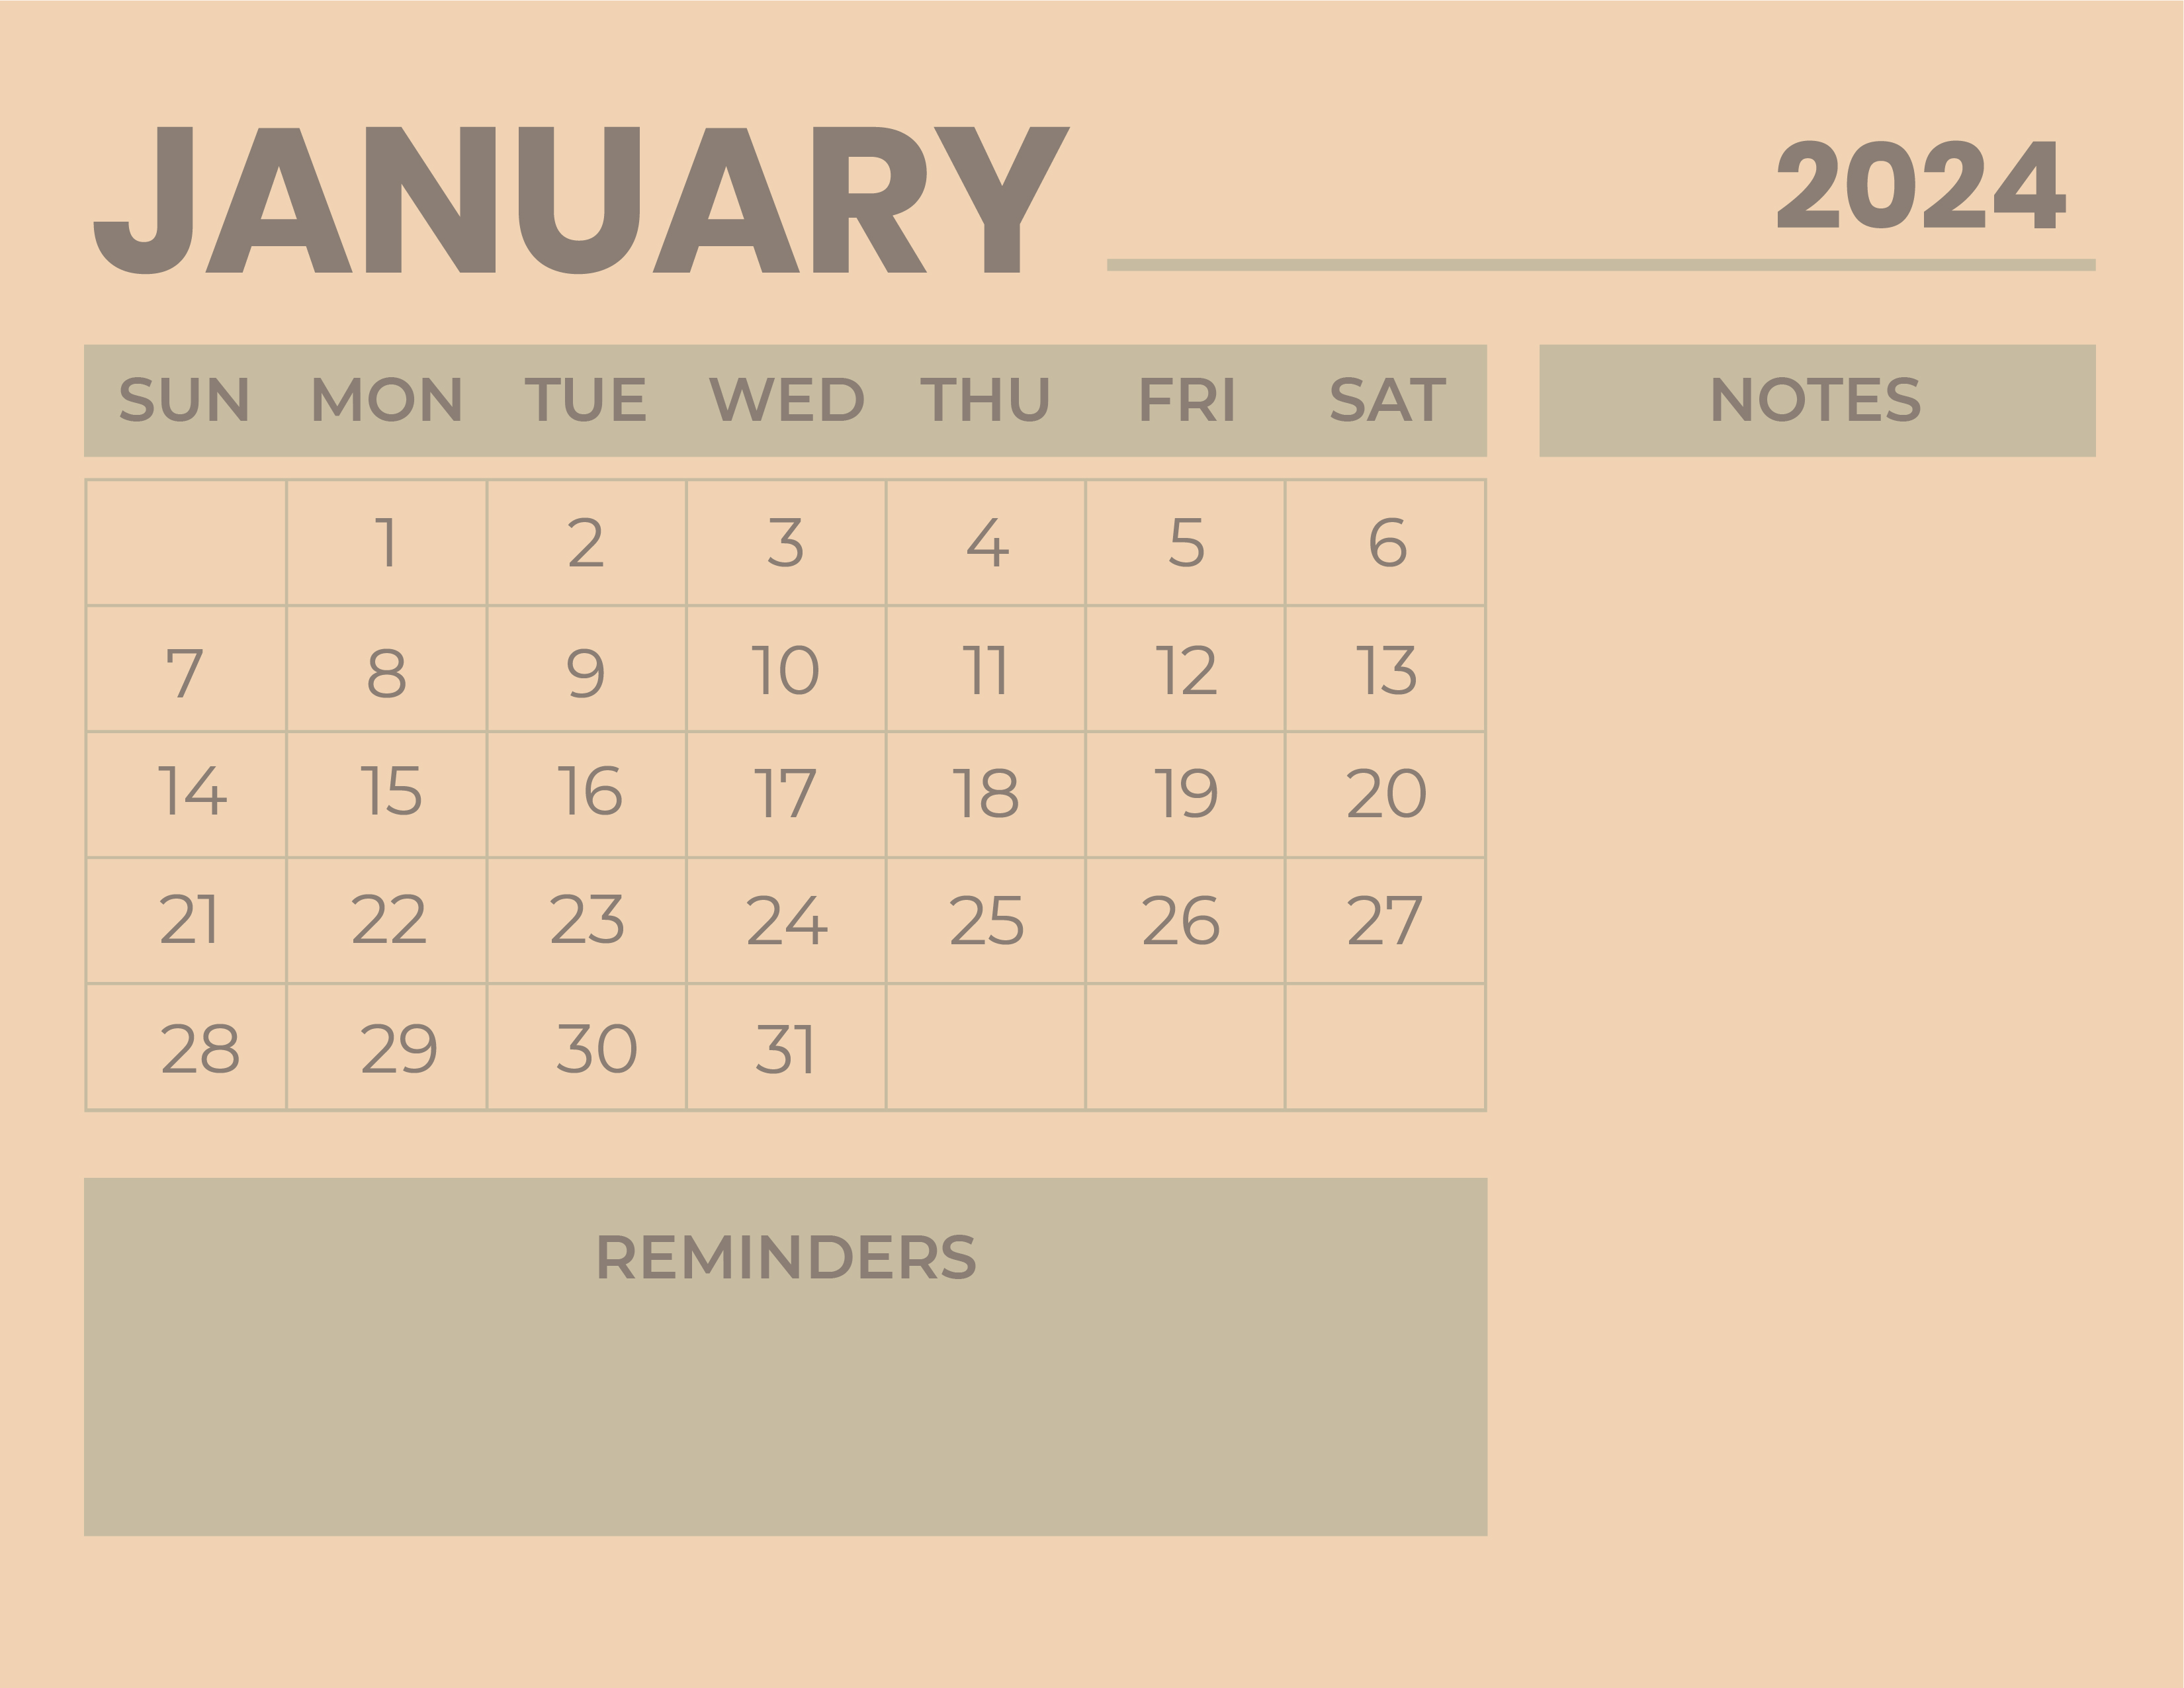 2024 January Calendar Blank Form 2021 January 2024 Calendar